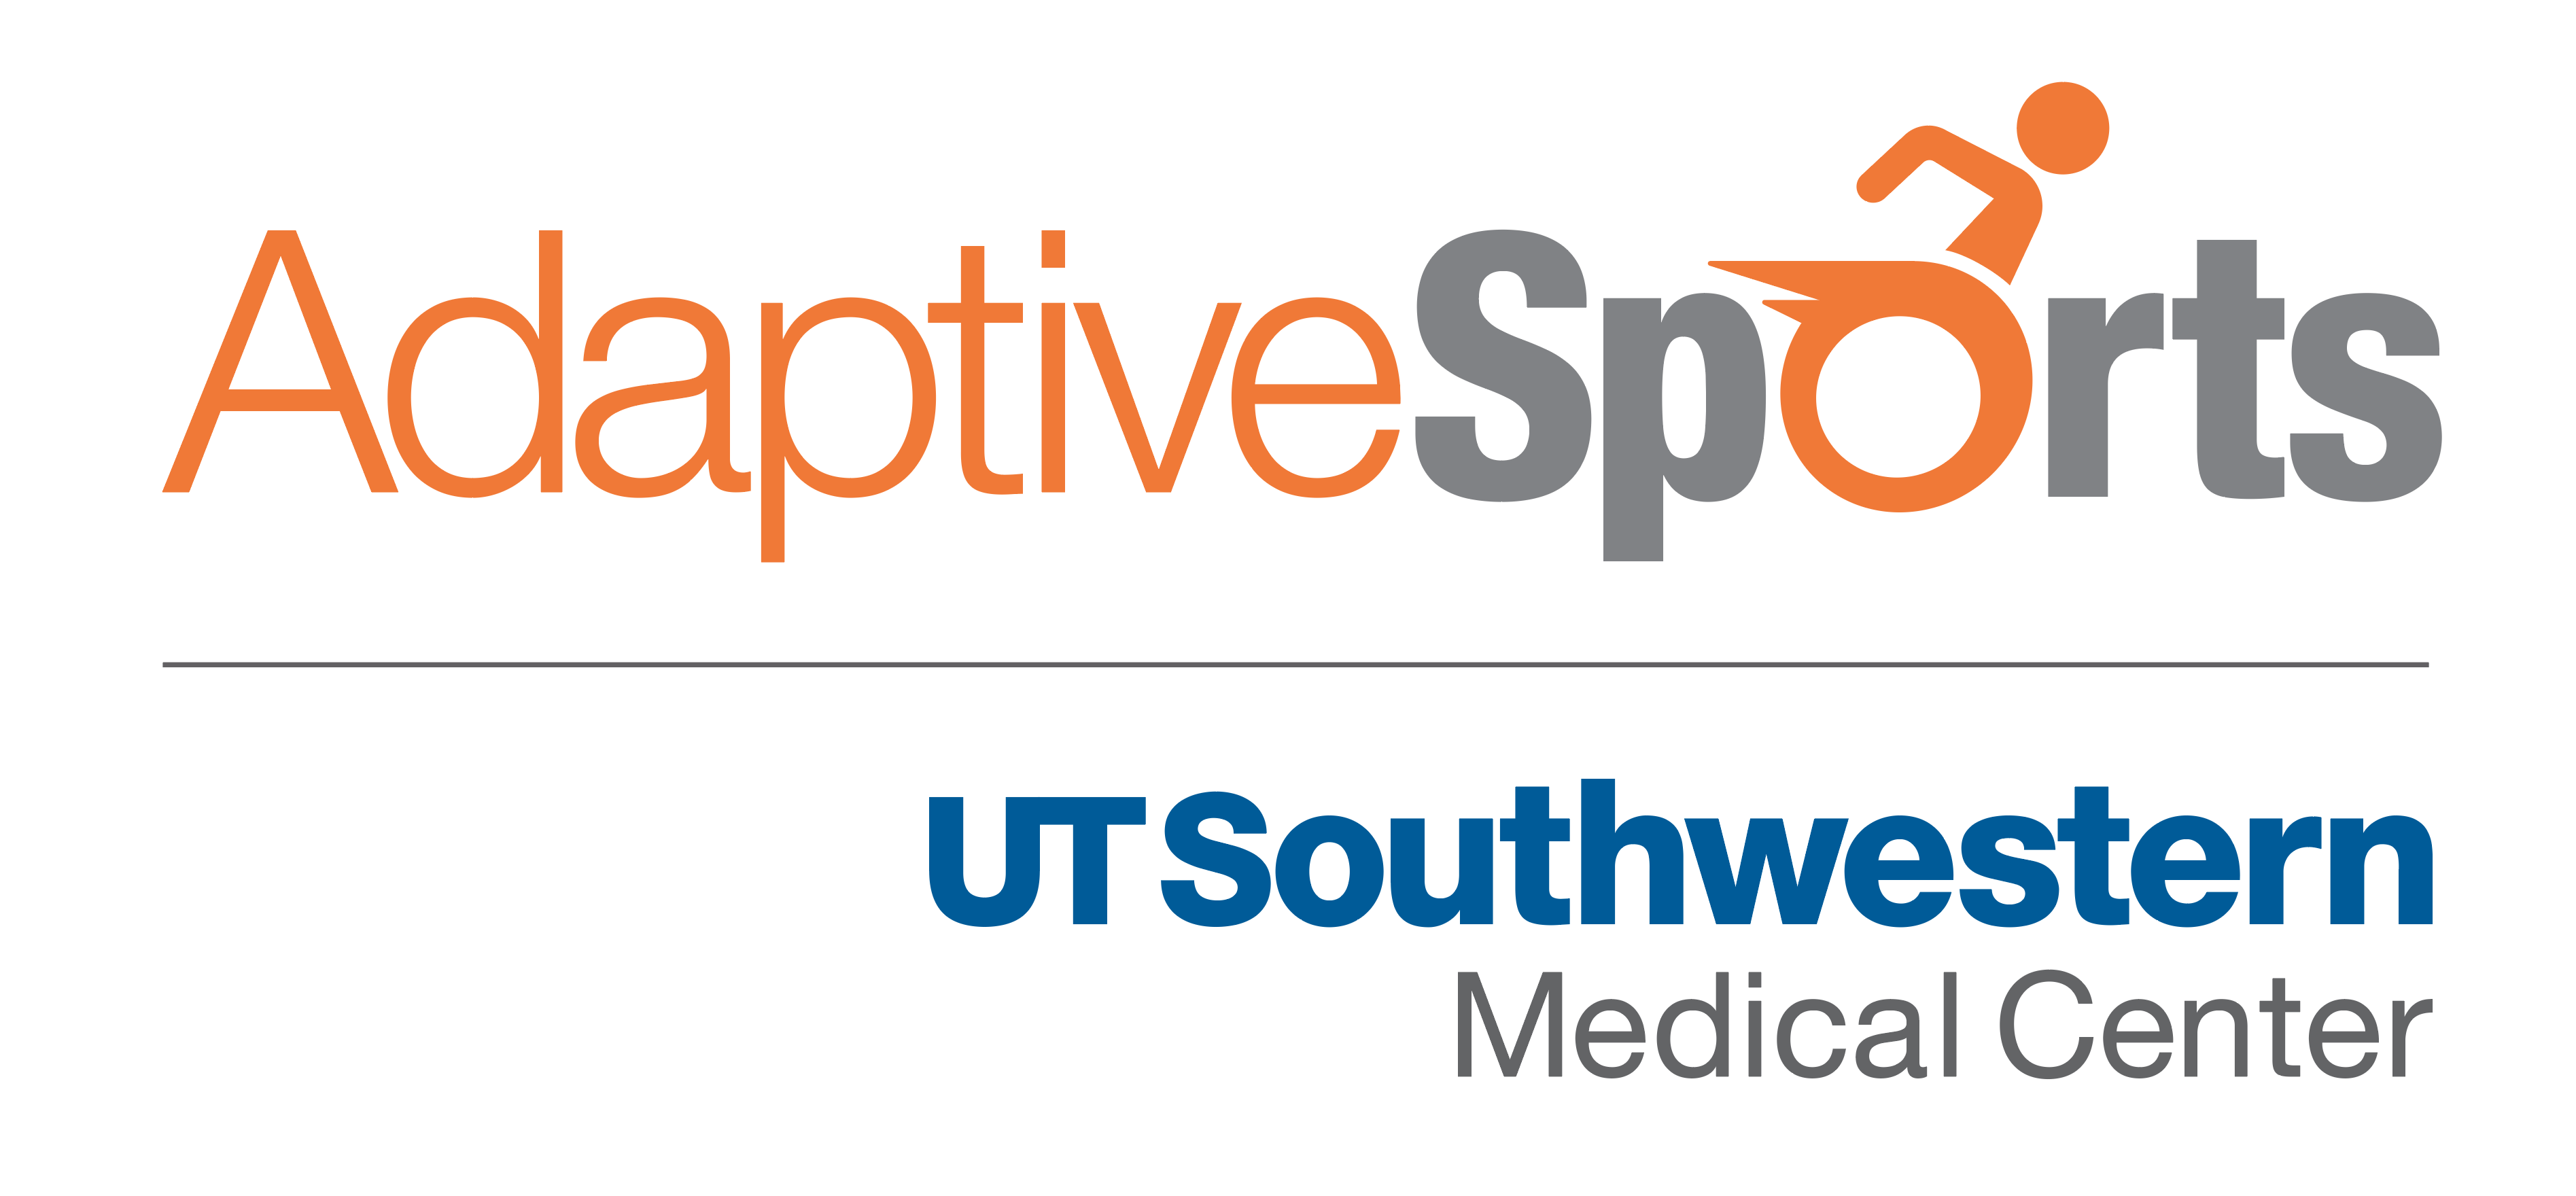 UTSW Logo - Adaptive Sports Expo. Physical Medicine and Rehabilitation. UT